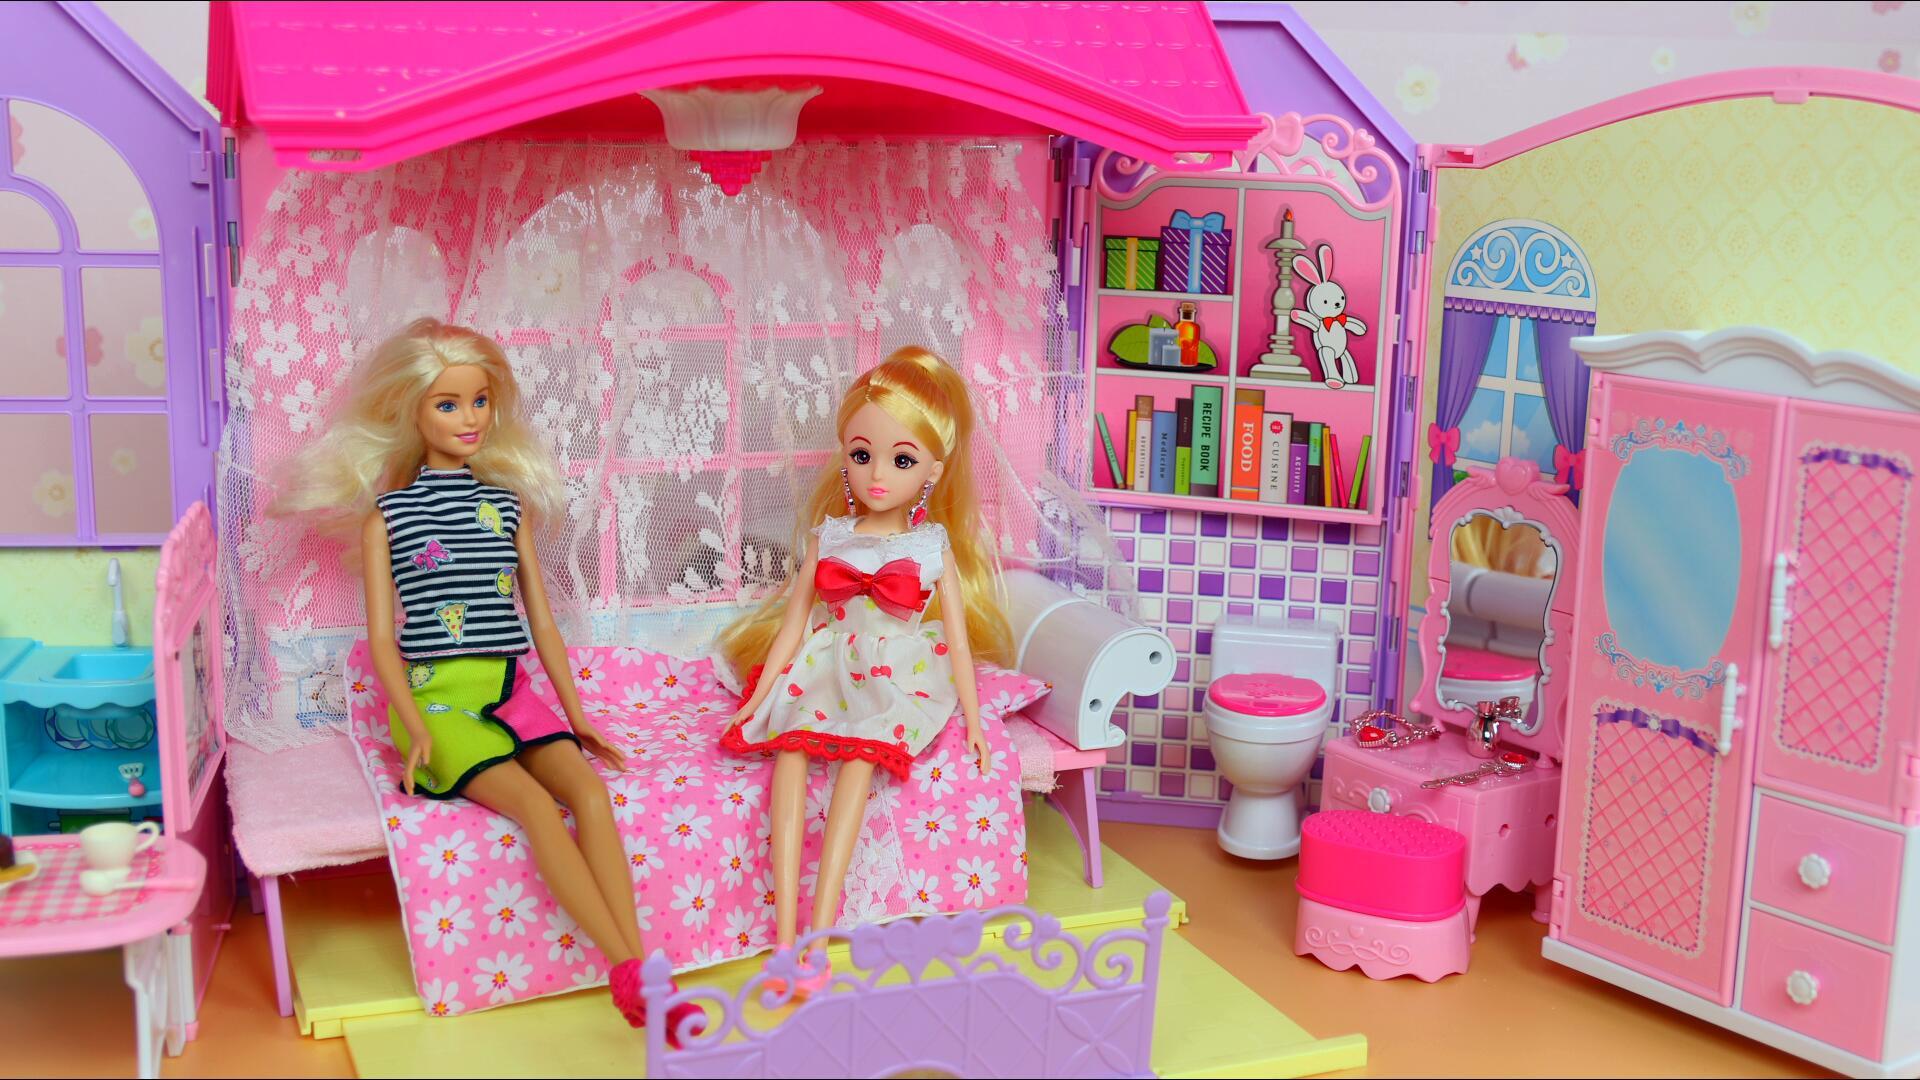 芭比控必入，美泰推出《Barbie Dreamhouse An Architectural》书籍 – NOWRE现客